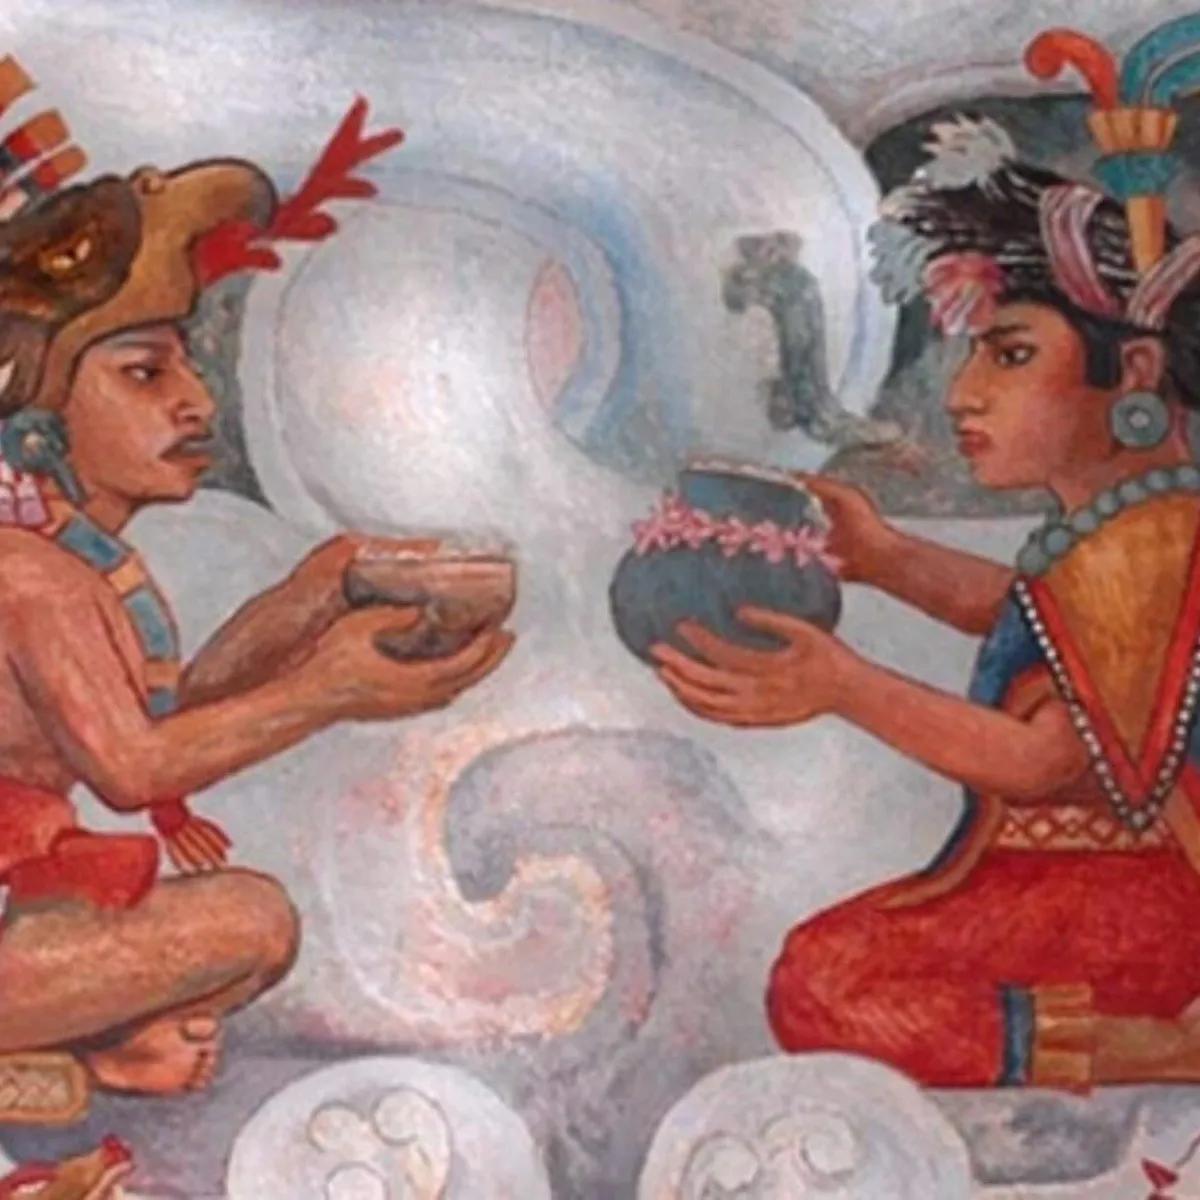 cultura zapoteca vestimenta - Cuál es la gastronomía de la cultura zapoteca